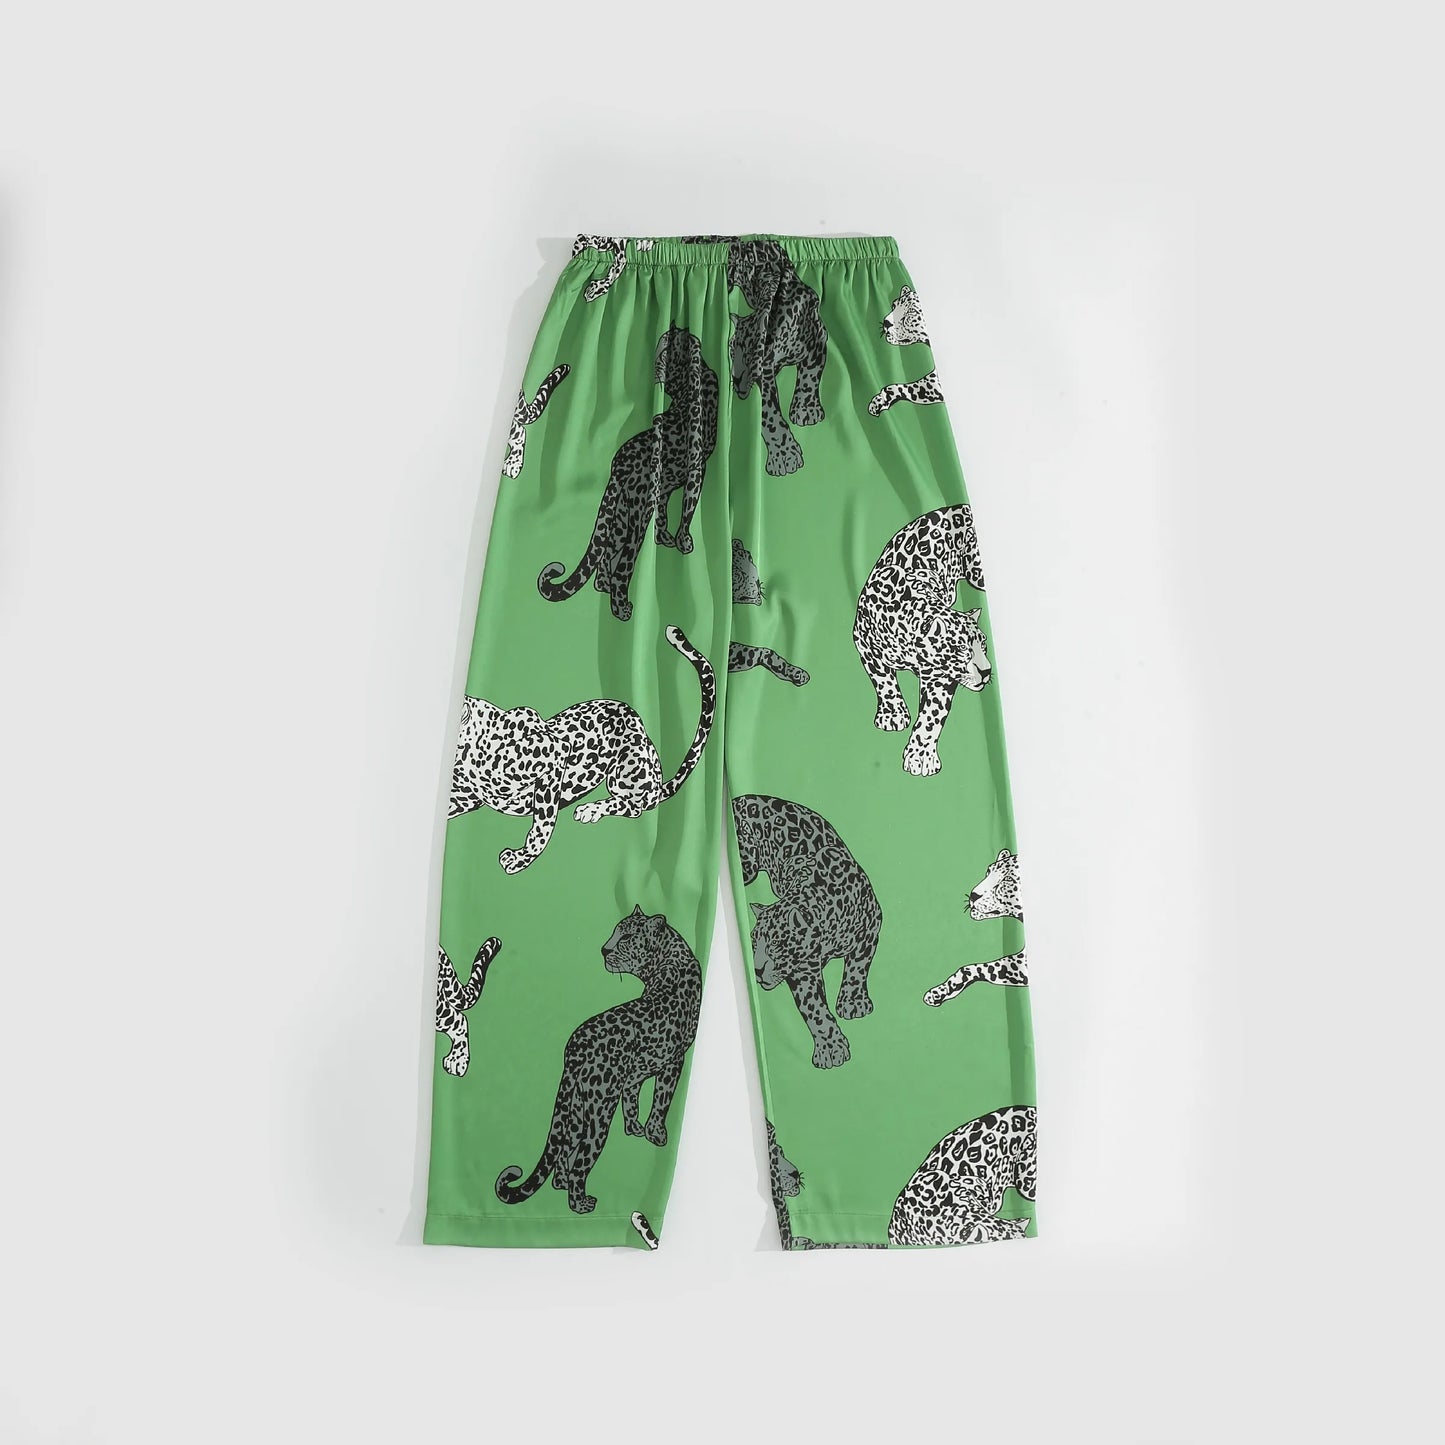 Green Leopard Printed Women Sleepwear Silk